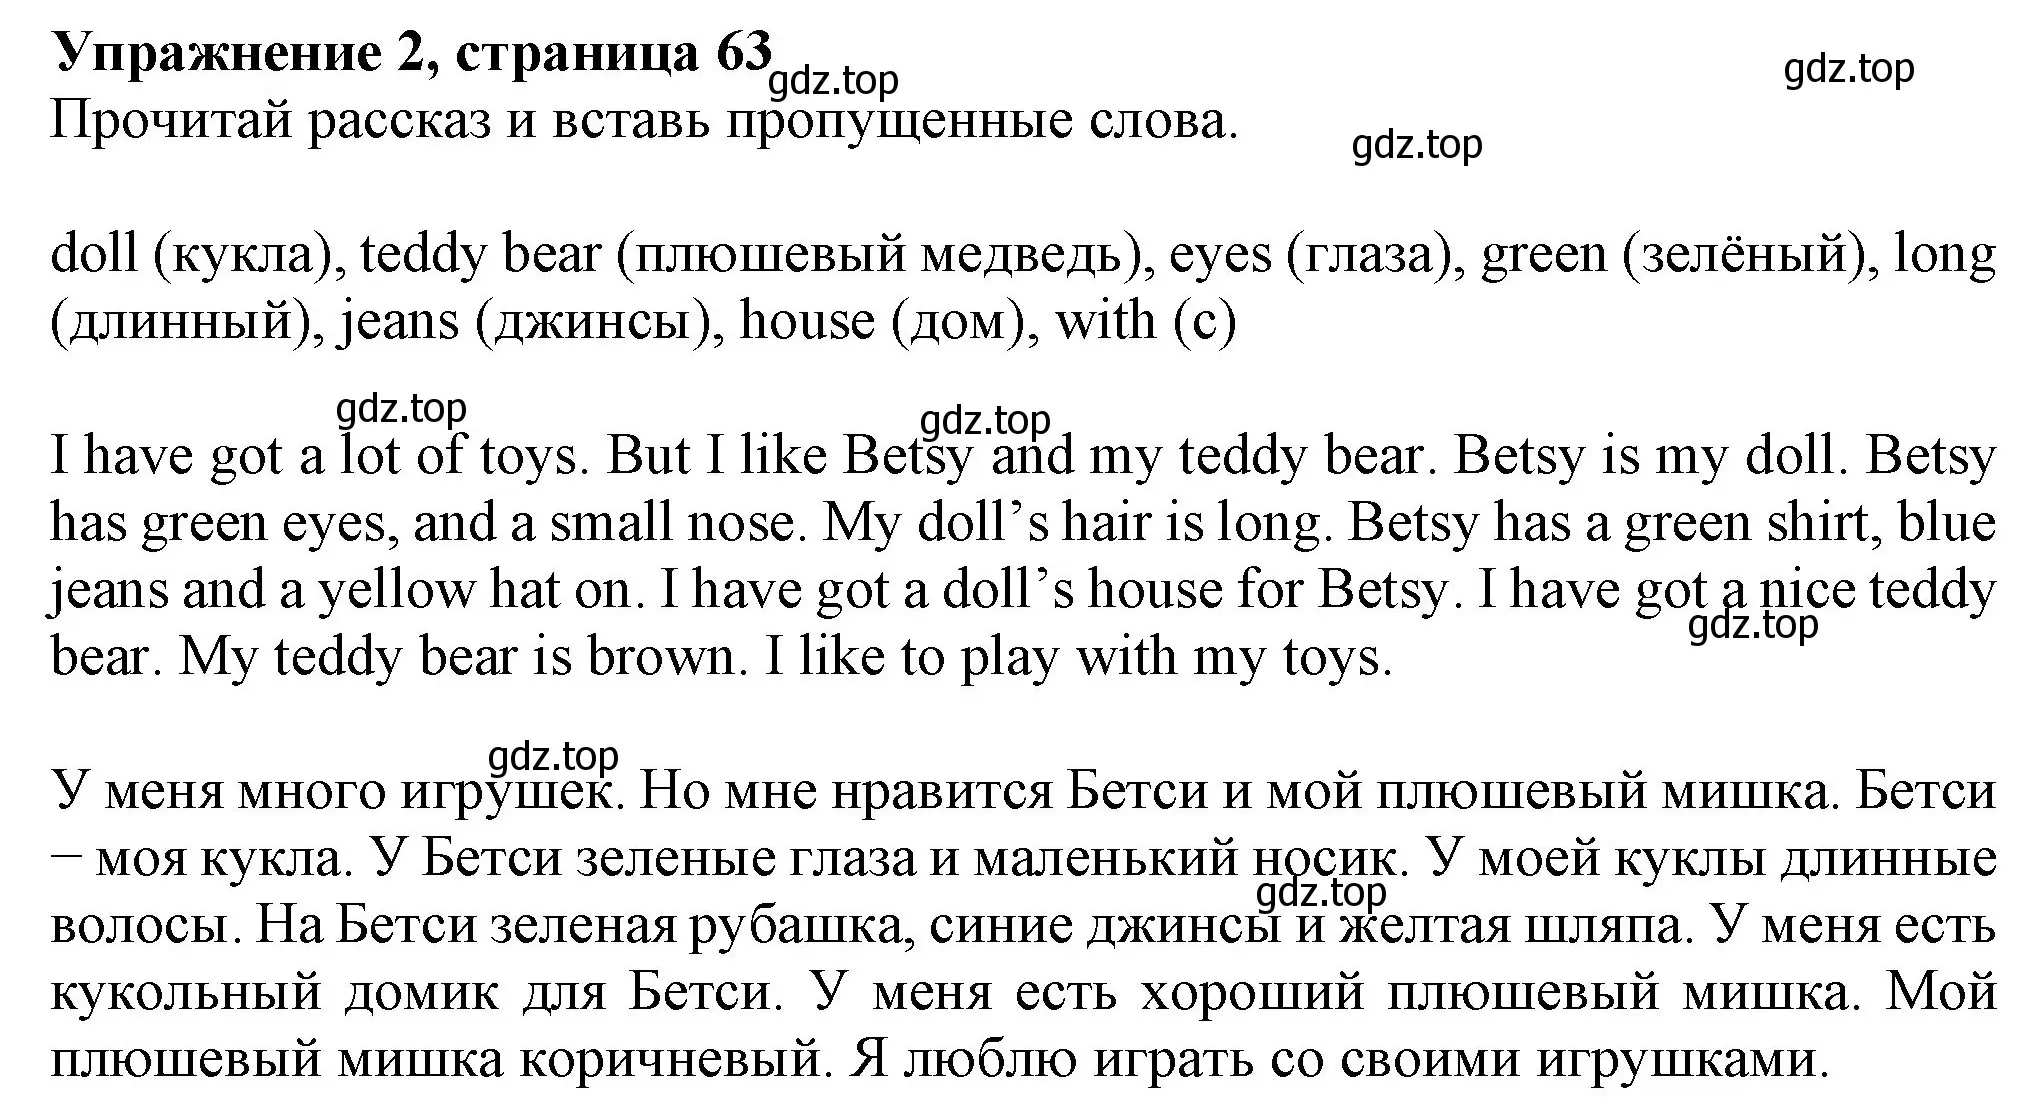 Решение номер 2 (страница 63) гдз по английскому языку 3 класс Биболетова, Денисенко, рабочая тетрадь